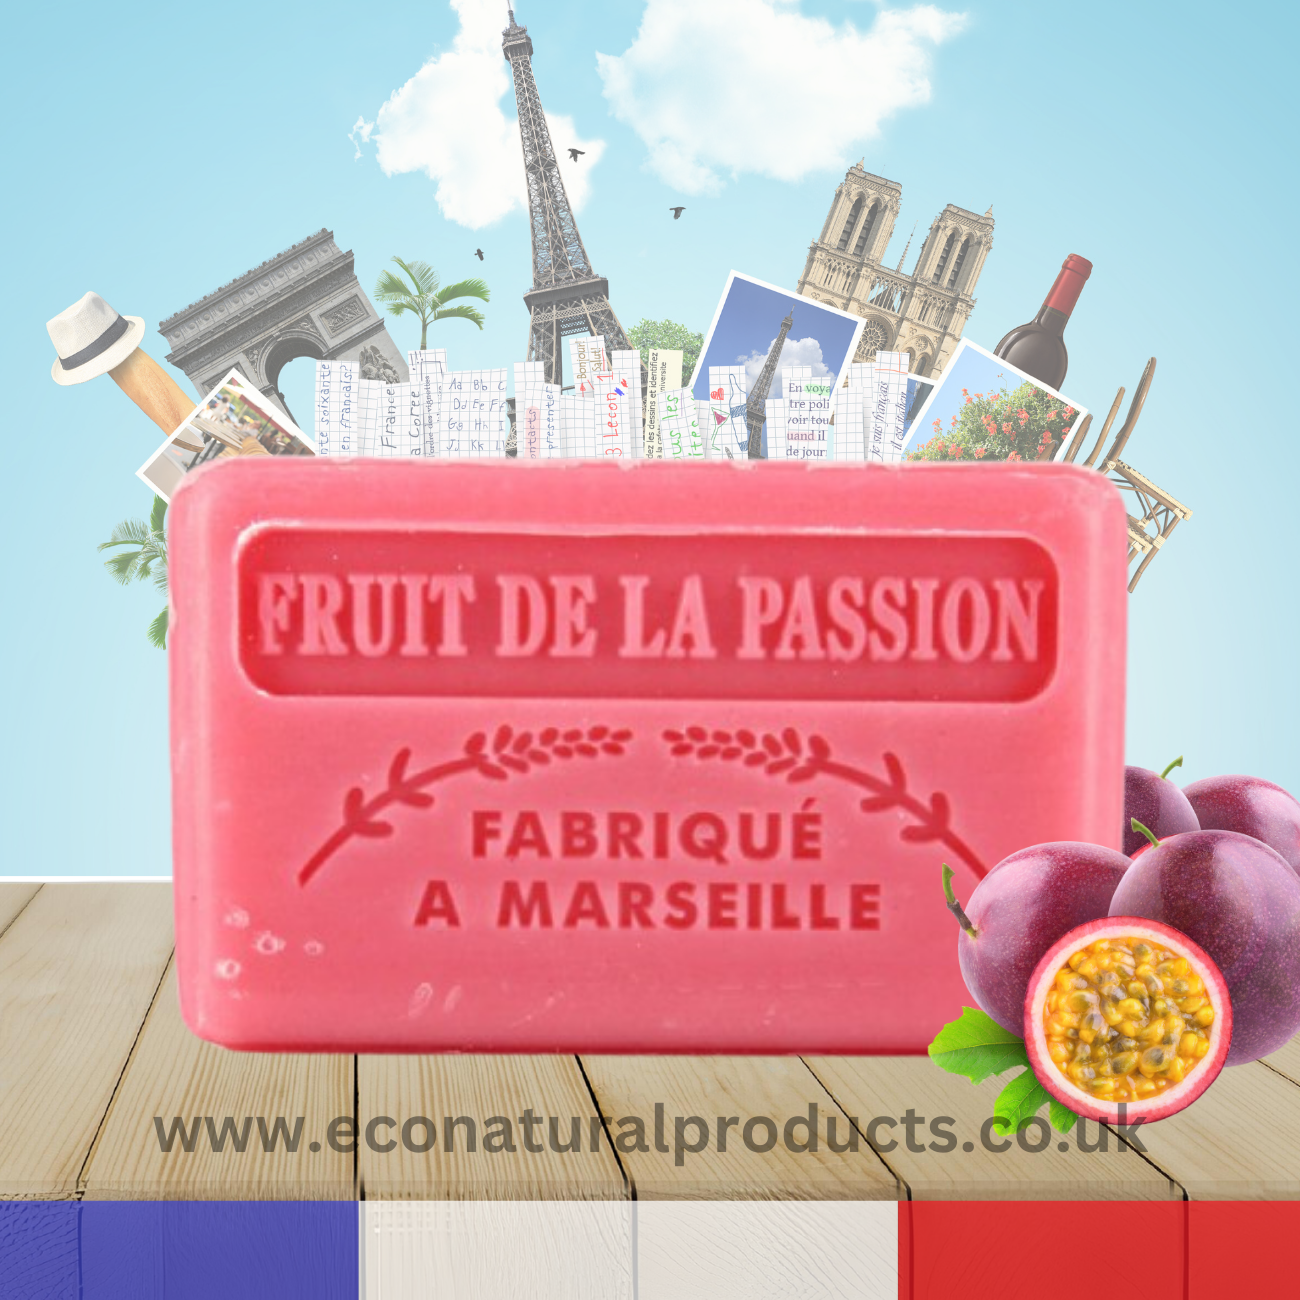 French Marseille Soap Fruit de la Passion (Passion Fruit) 60g